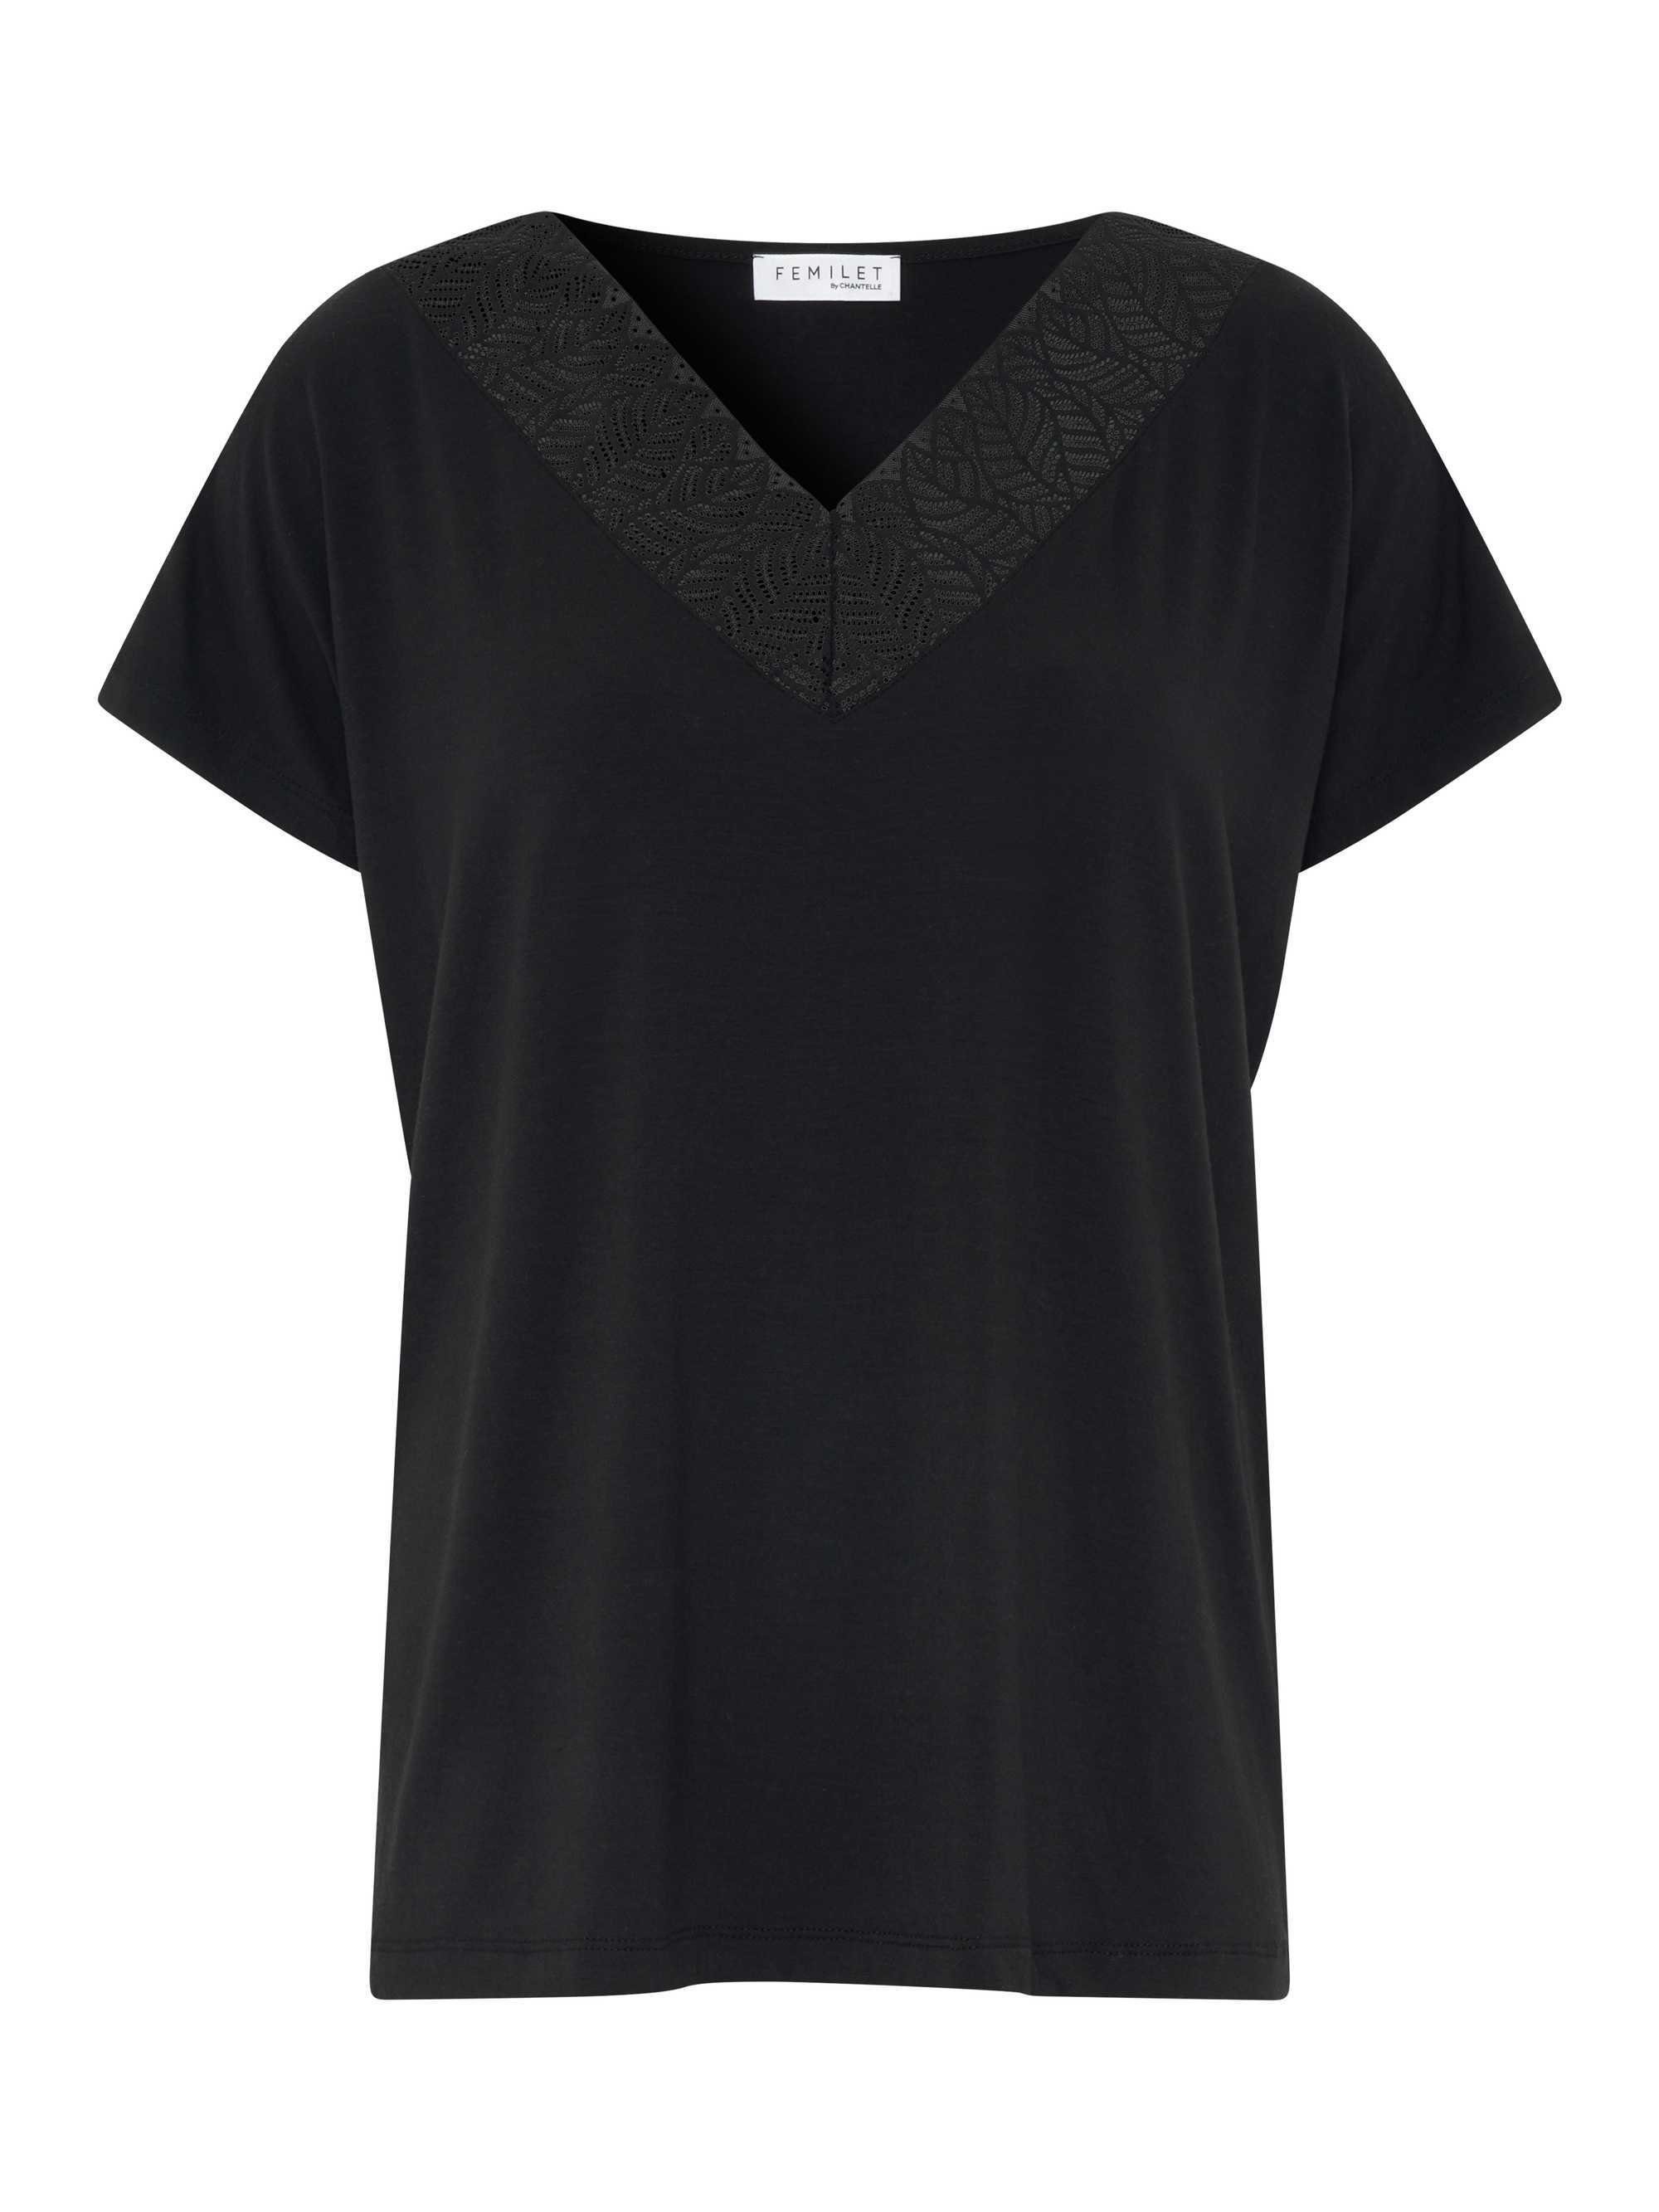 Shirt, Femilet Oberteil, - T-Shirt Damen Lounge-T-Shirt Modal